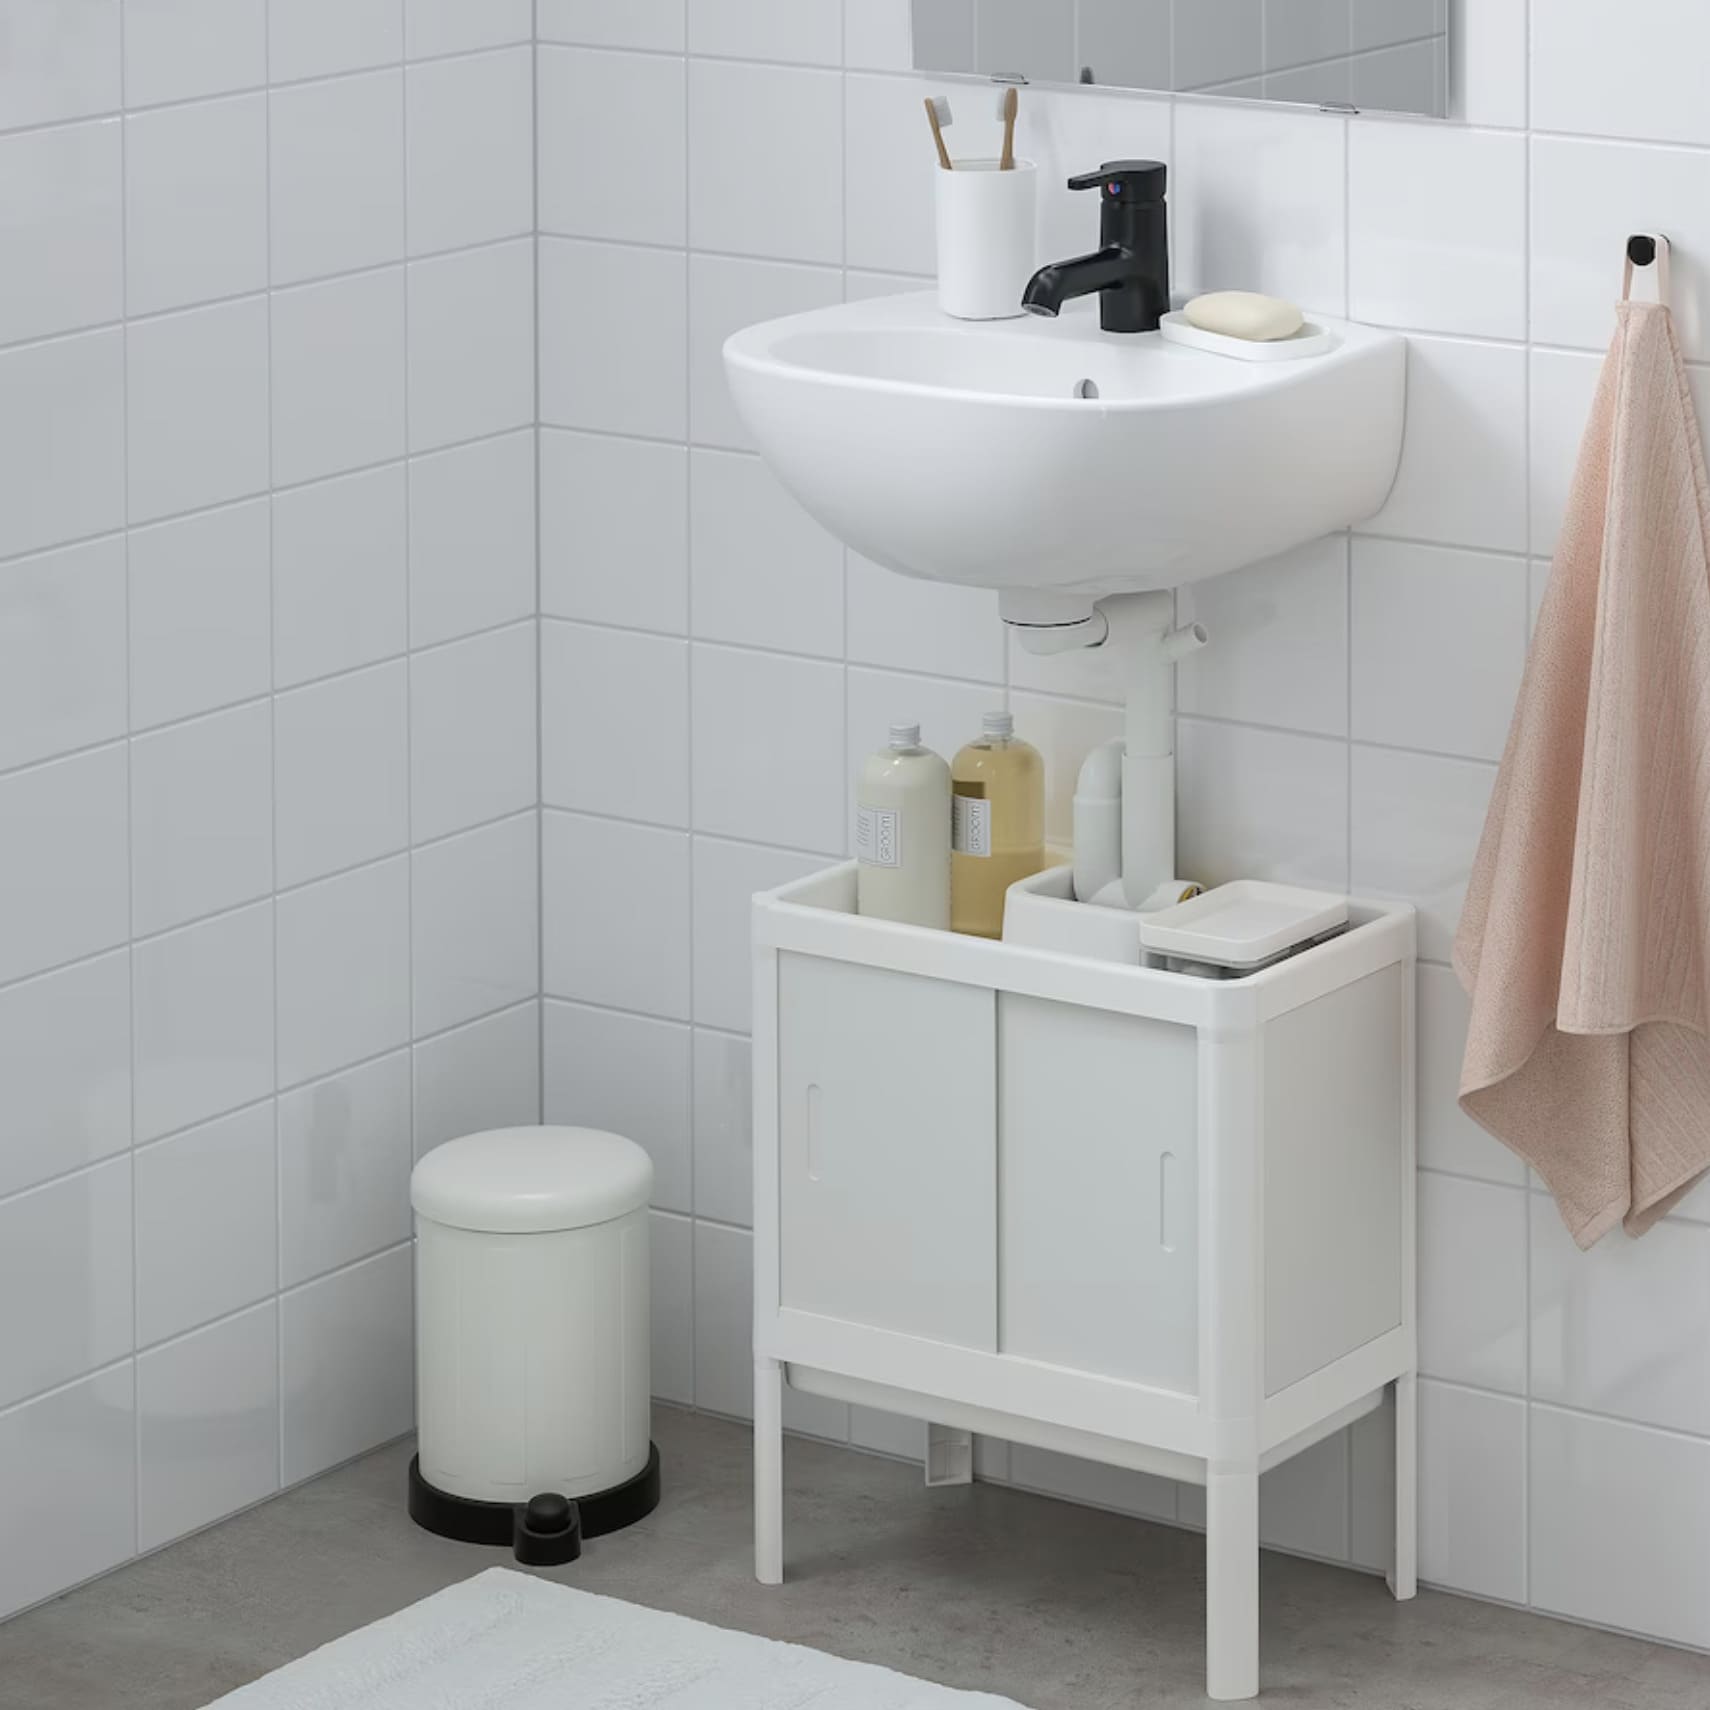 Ikea tiene la solución para ordenar los baños pequeños: un armario de pared  que no ocupa espacio y tiene una amplia capacidad de almacenaje